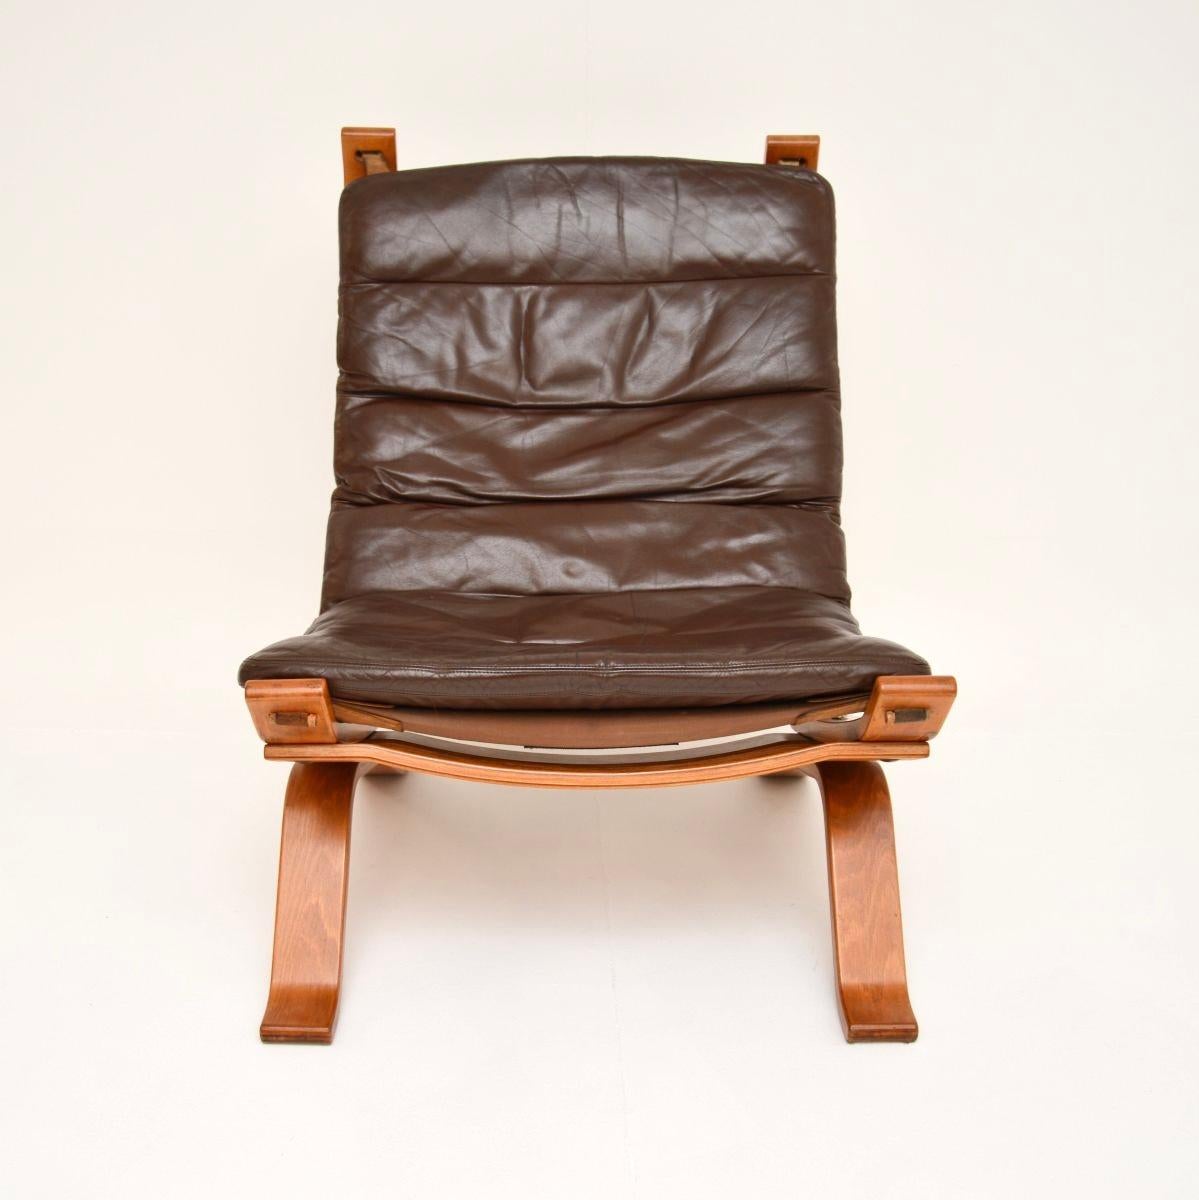 Ein stilvoller und äußerst bequemer dänischer Vintage-Loungesessel aus Leder von Bramin aus den 1970er Jahren.

Es ist von hervorragender Qualität und hat ein schlankes und gut verarbeitetes Design. Das Gestell aus Bugholz stützt eine schlaffe